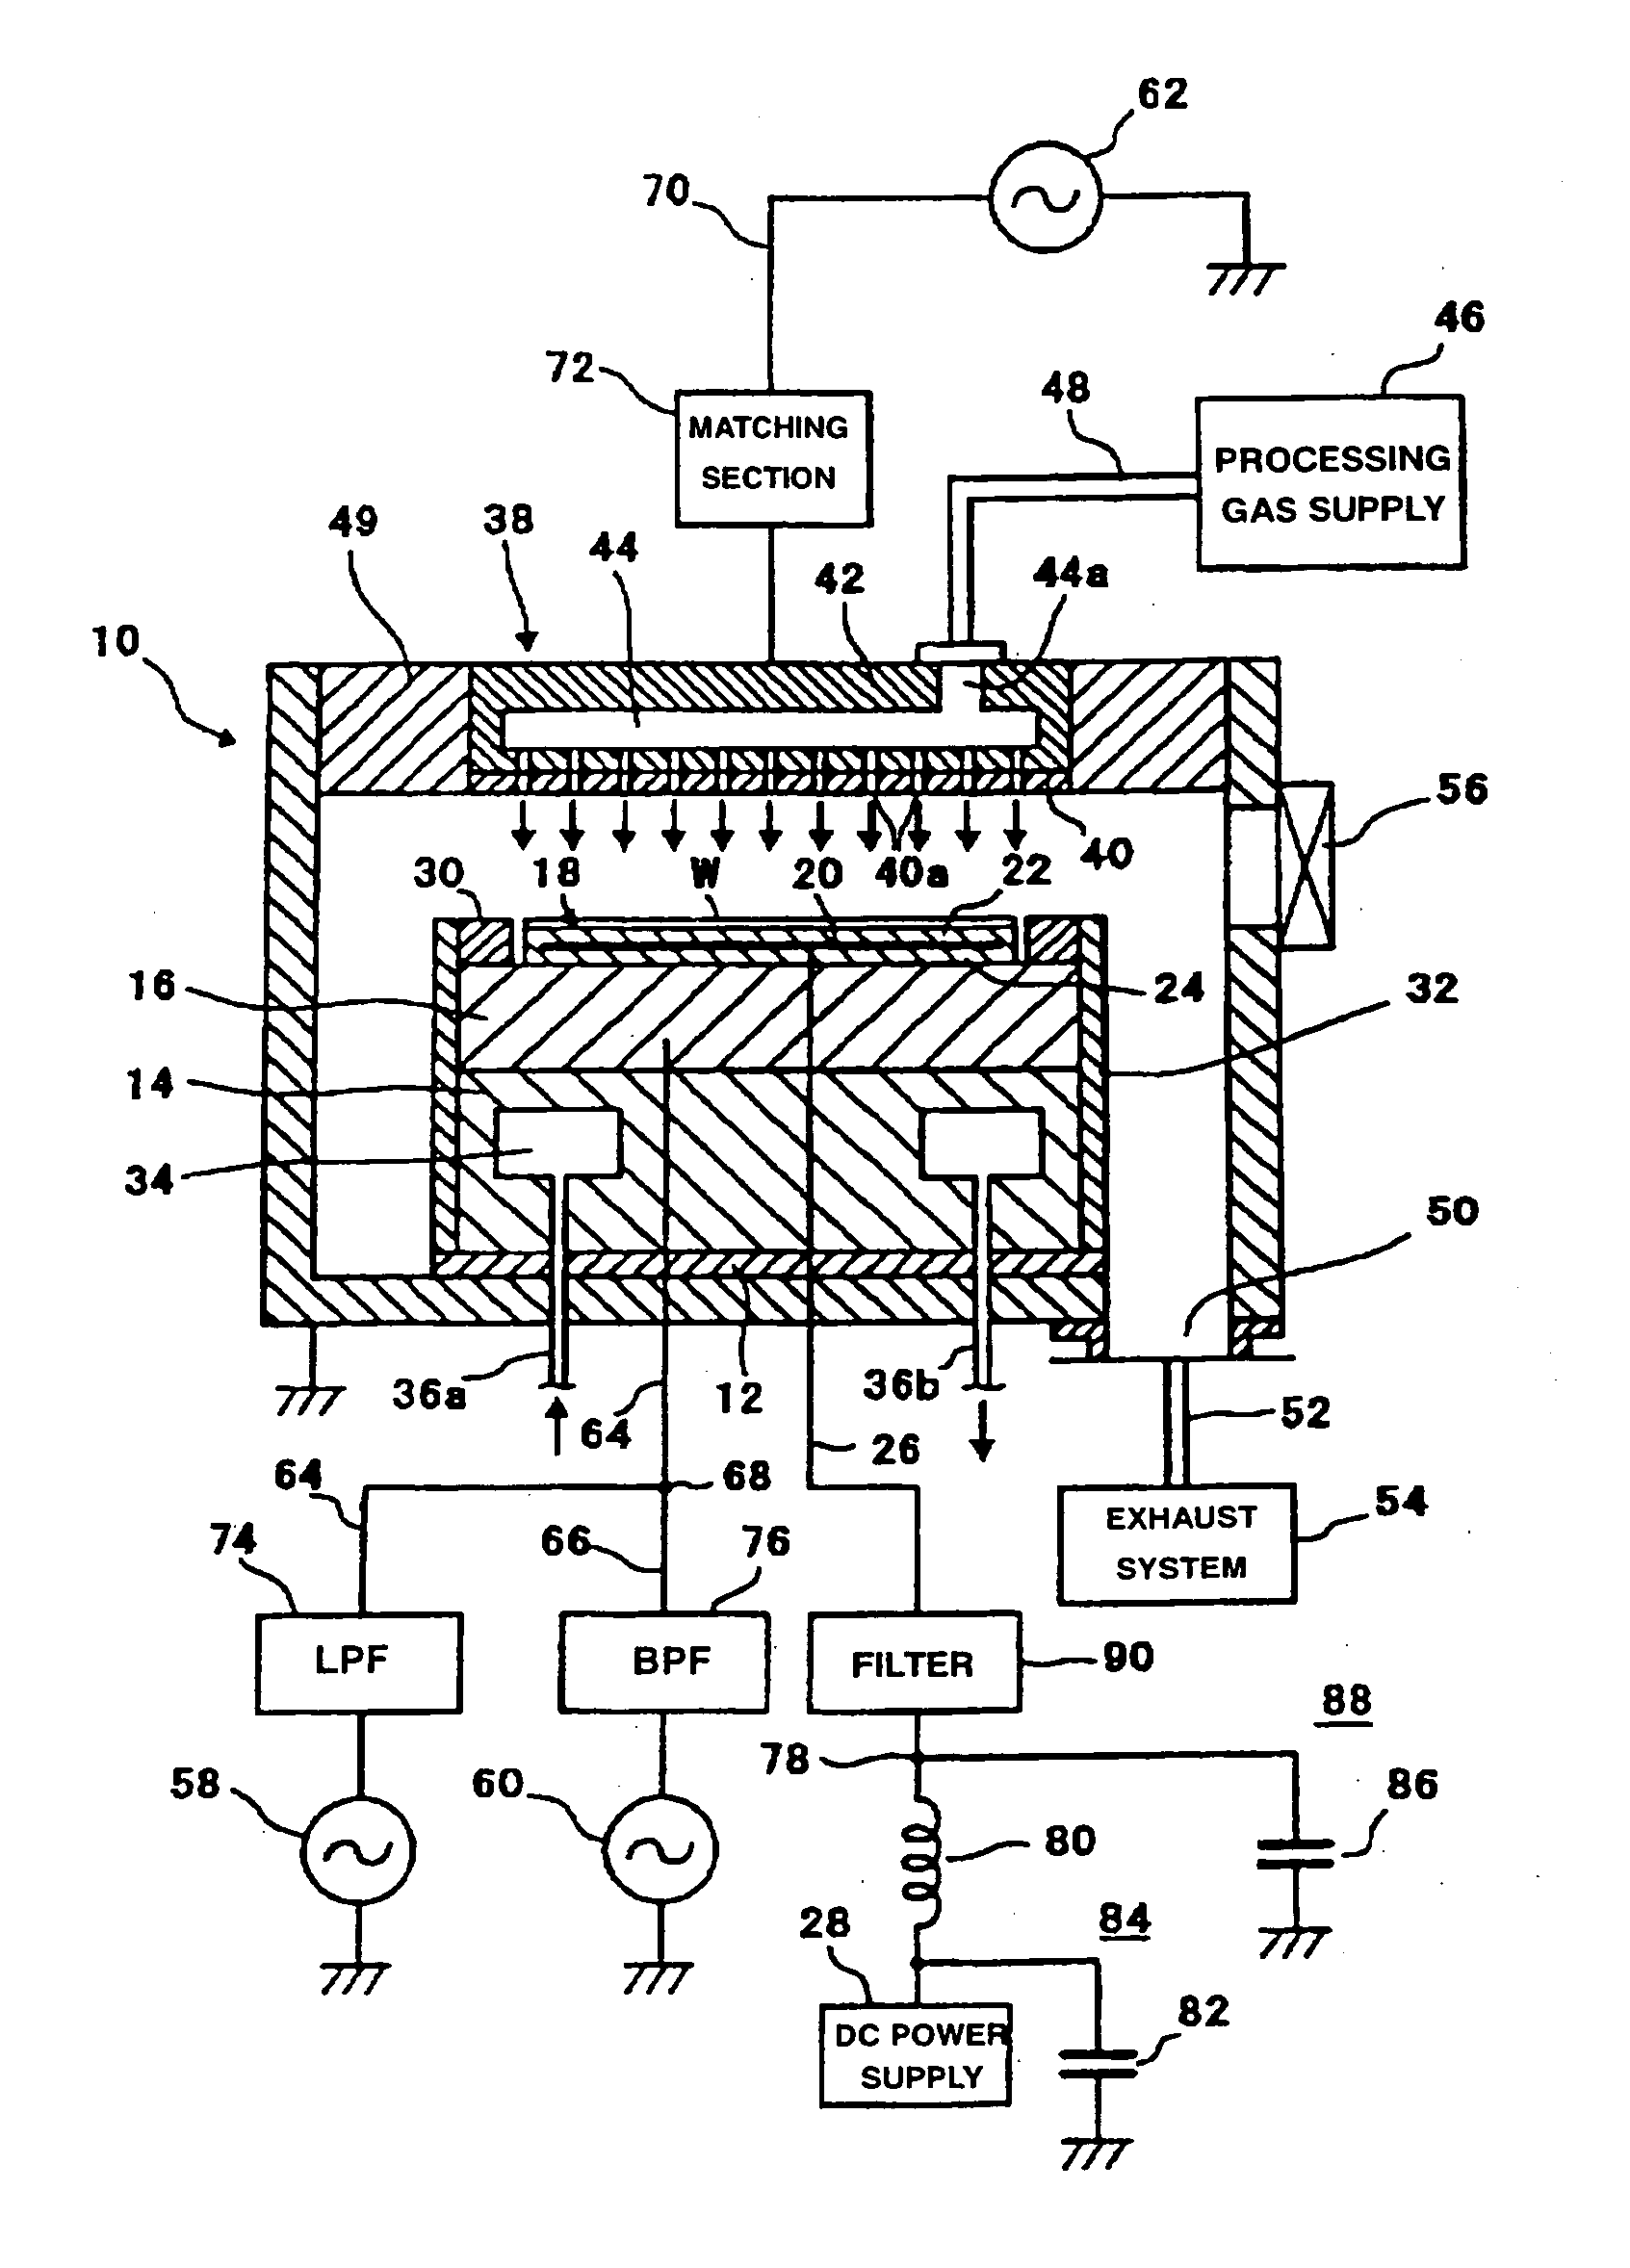 Processing apparatus